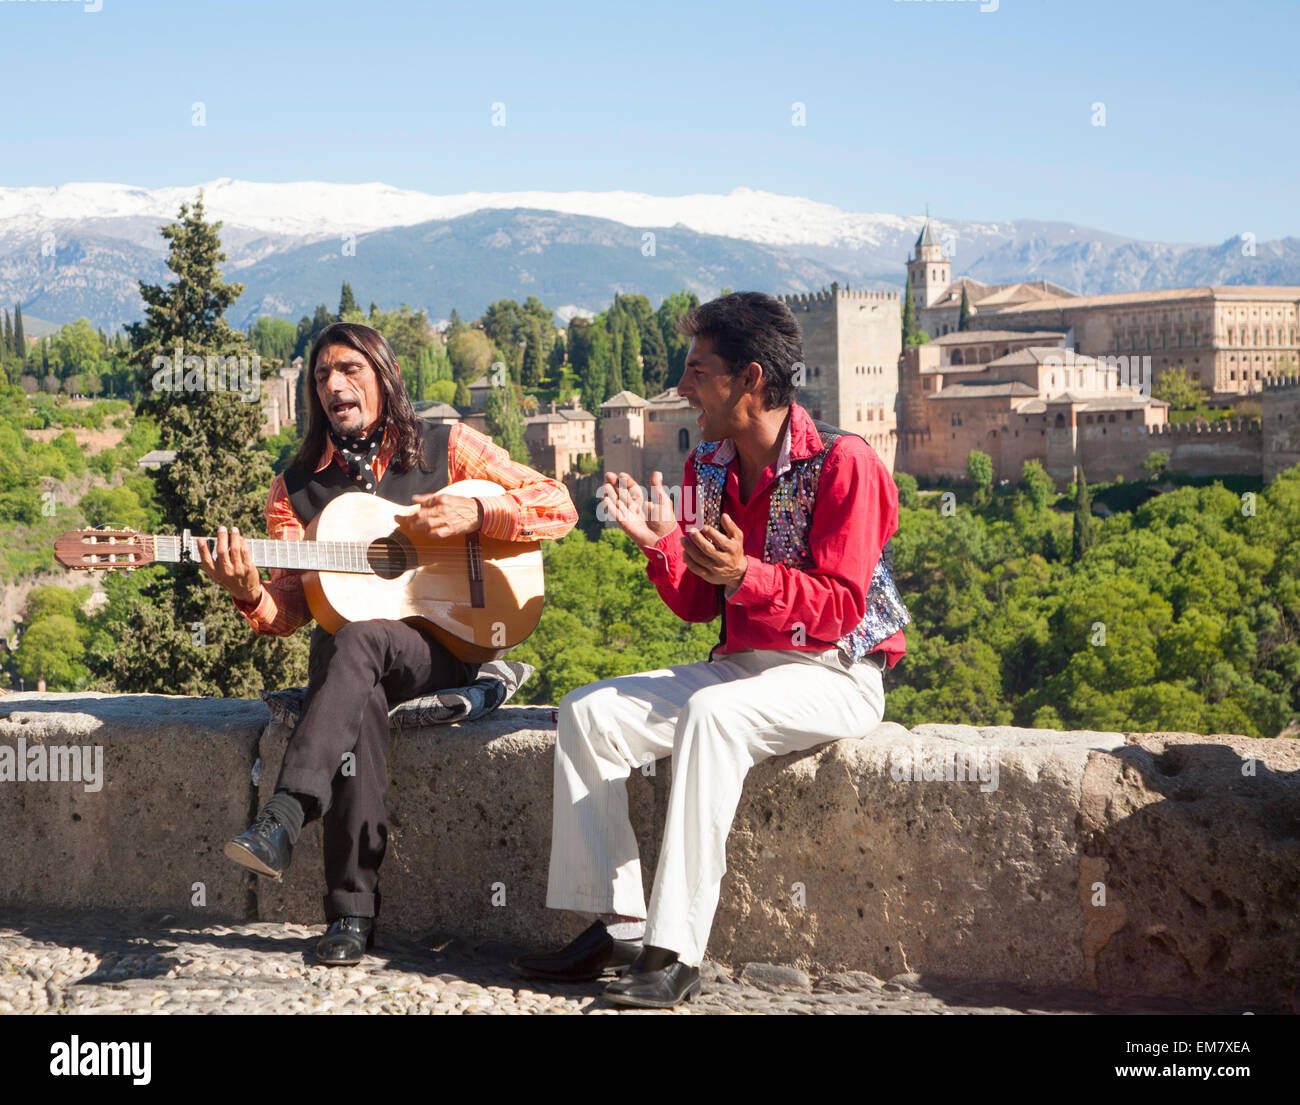 Músicos flamencos jugar con un telón de fondo de la Alhambra y Sierra Nevada y coronado de nieve, Granada, España Foto de stock